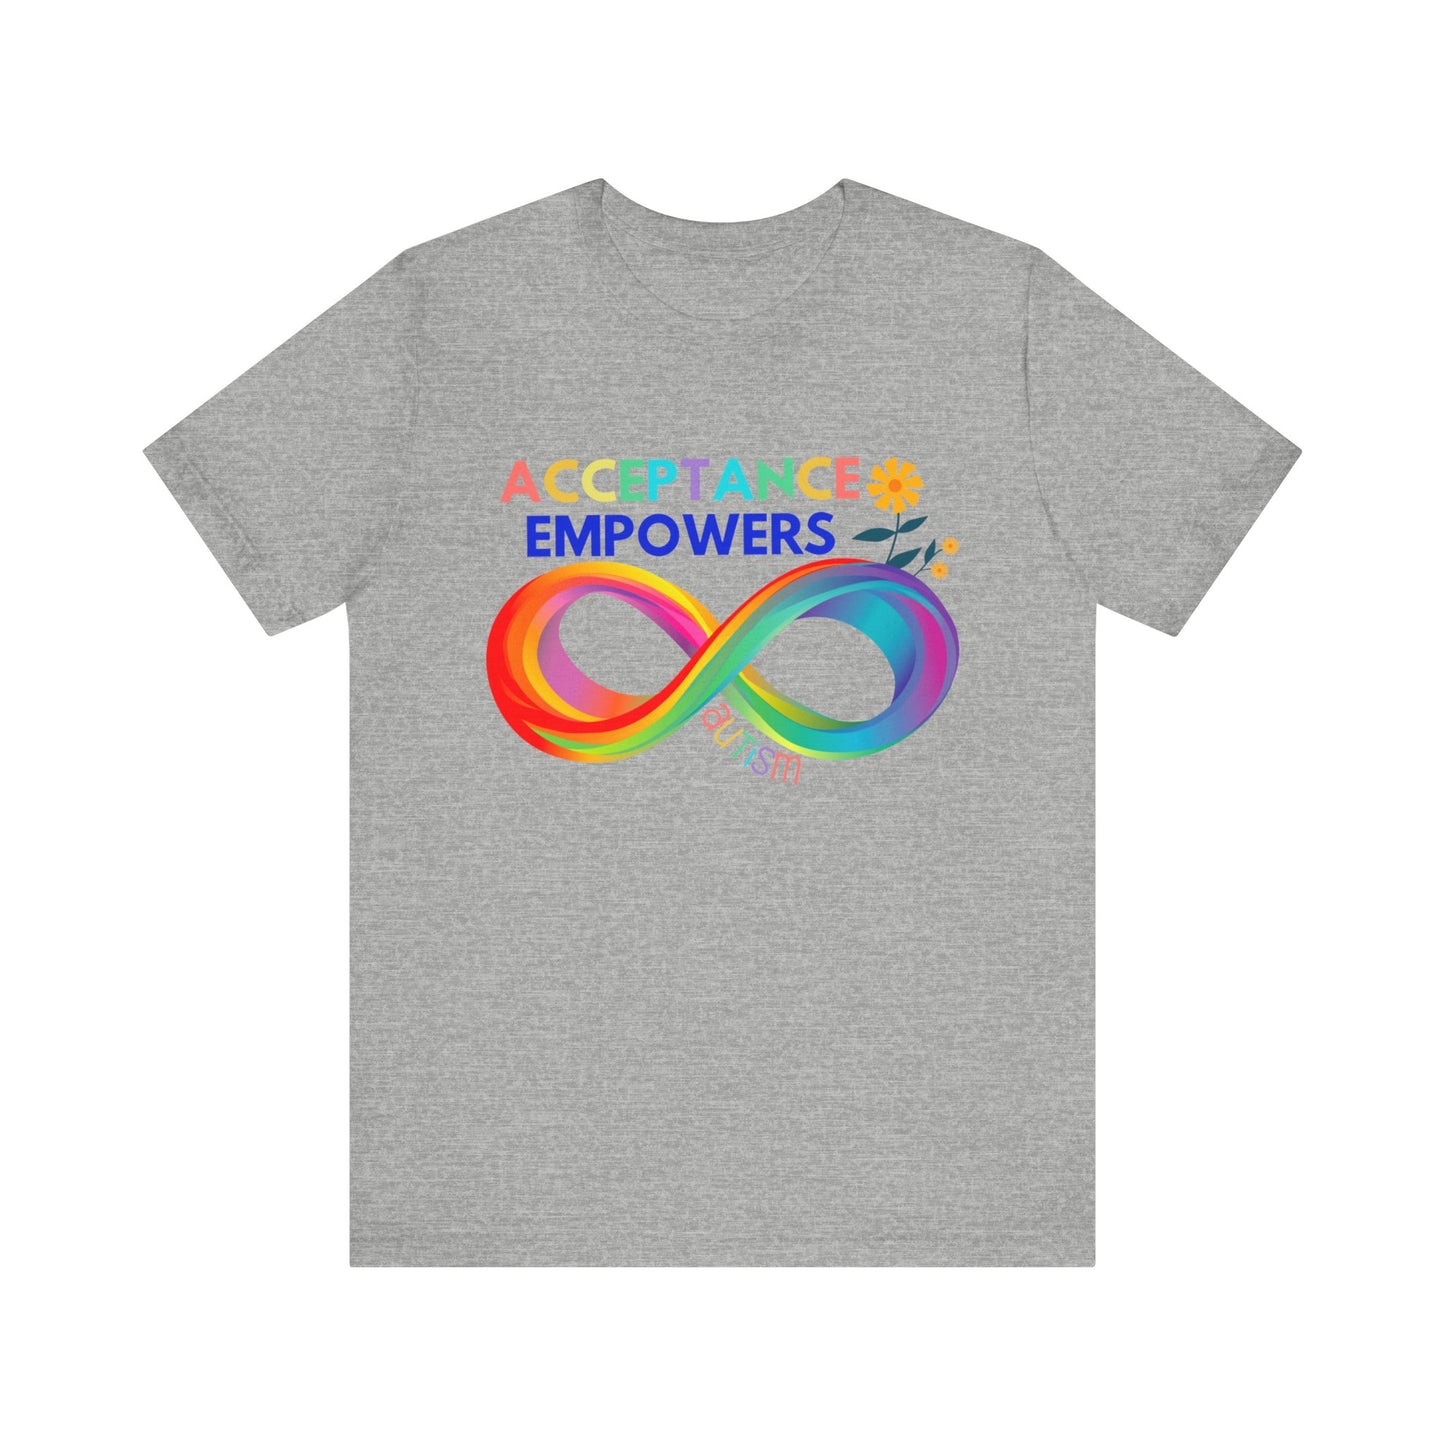 Autism Acceptance T-Shirt